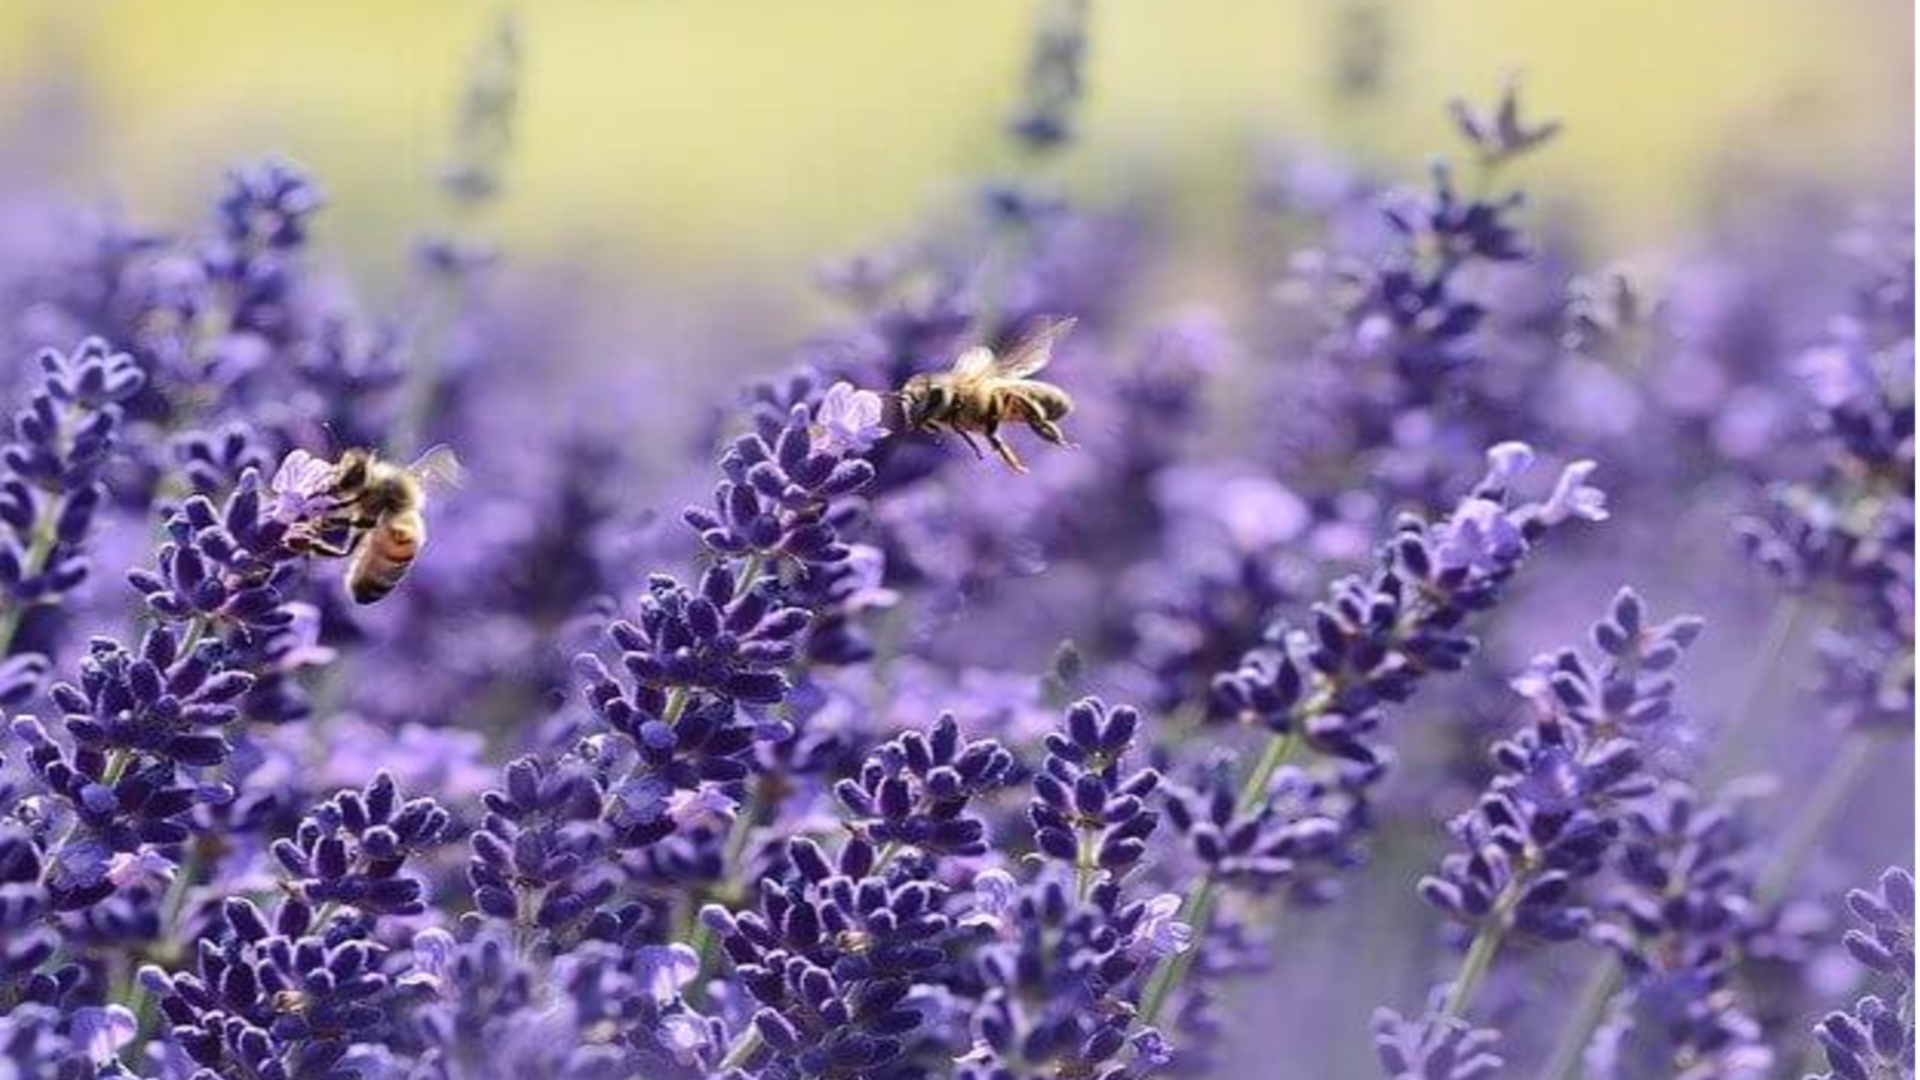 Bienen sammeln neben Pollen auch Mikroplastik